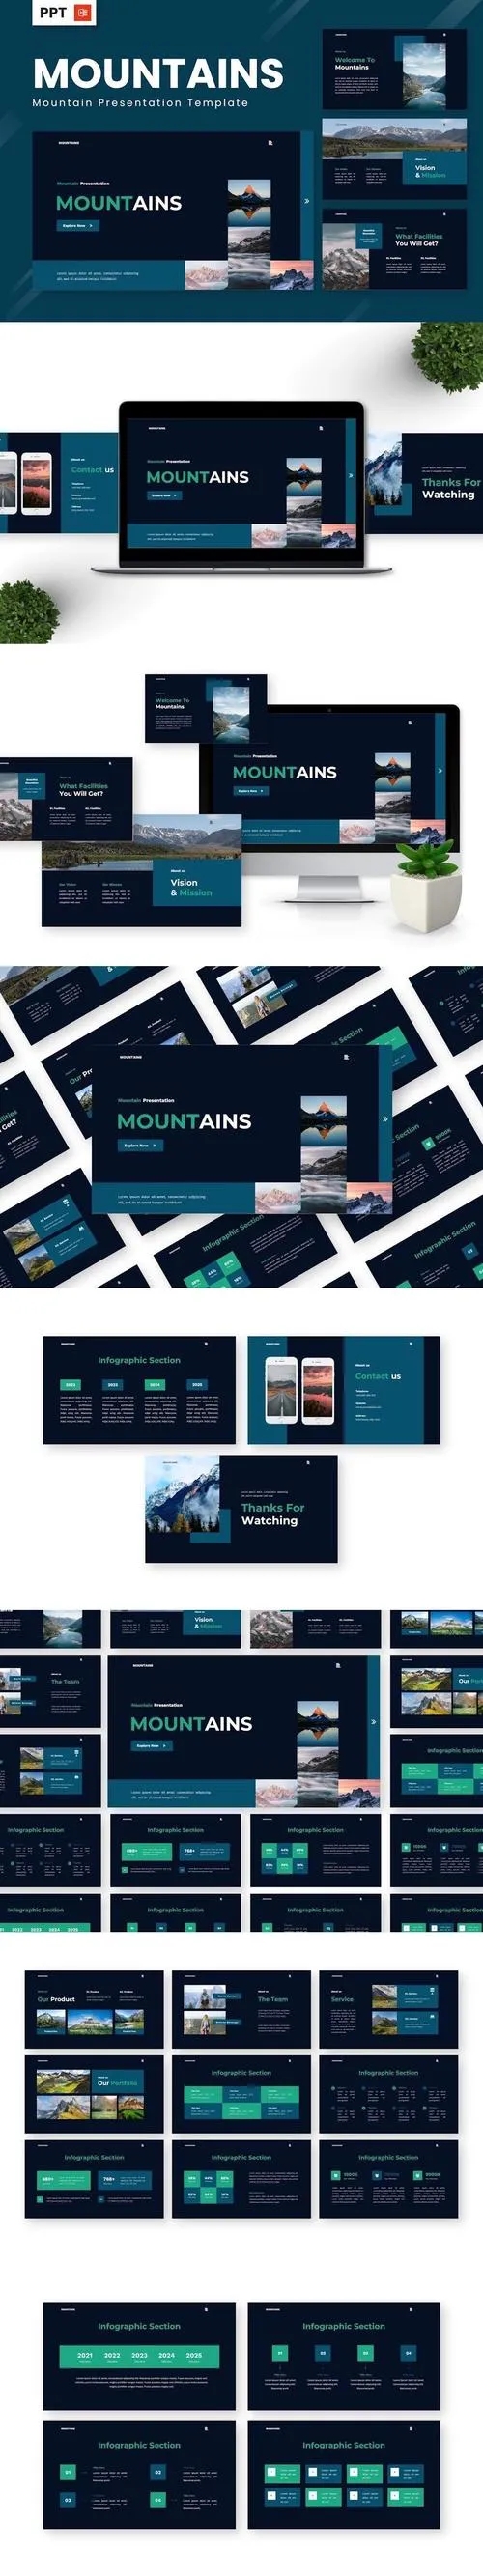 Mountains - Mountain Powerpoint Templates